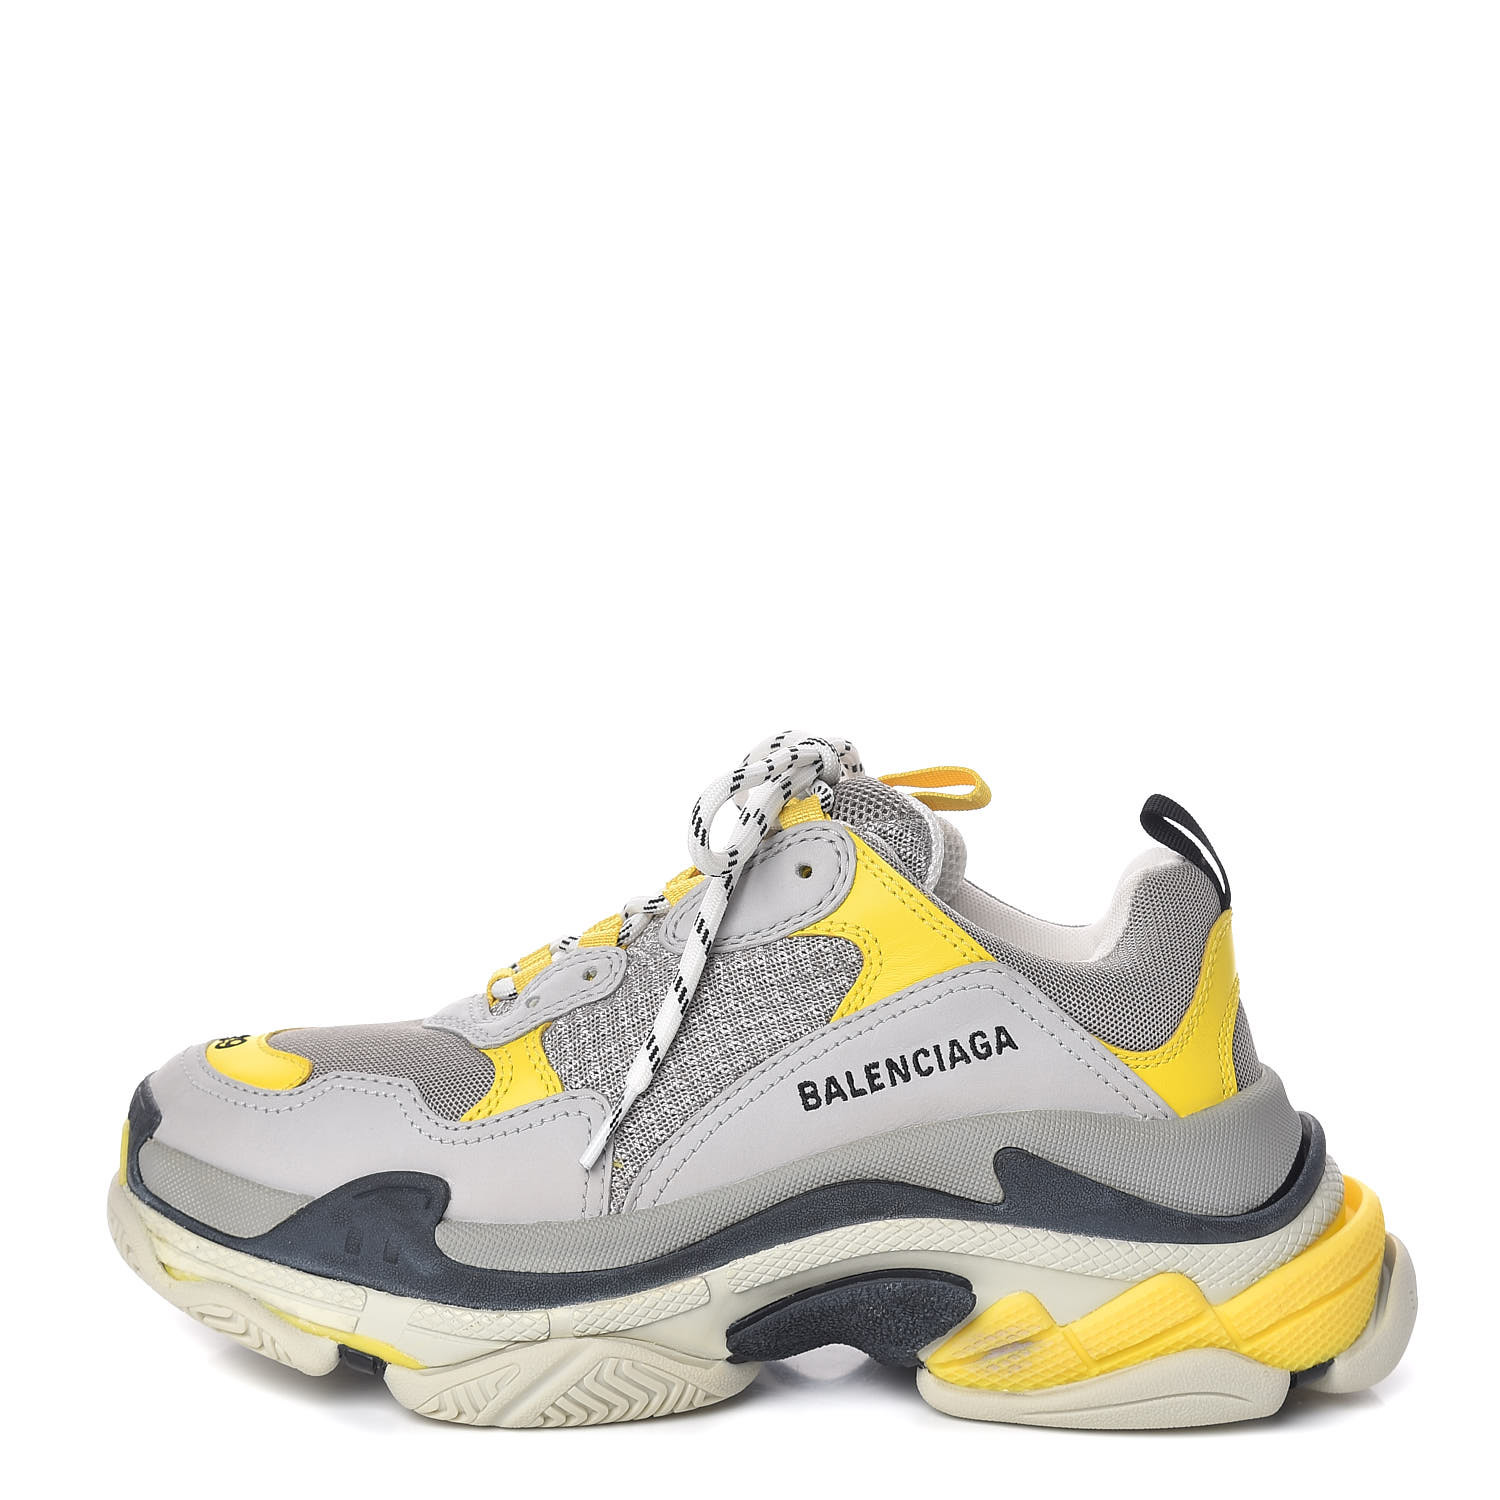 balenciaga sneakers yellow black